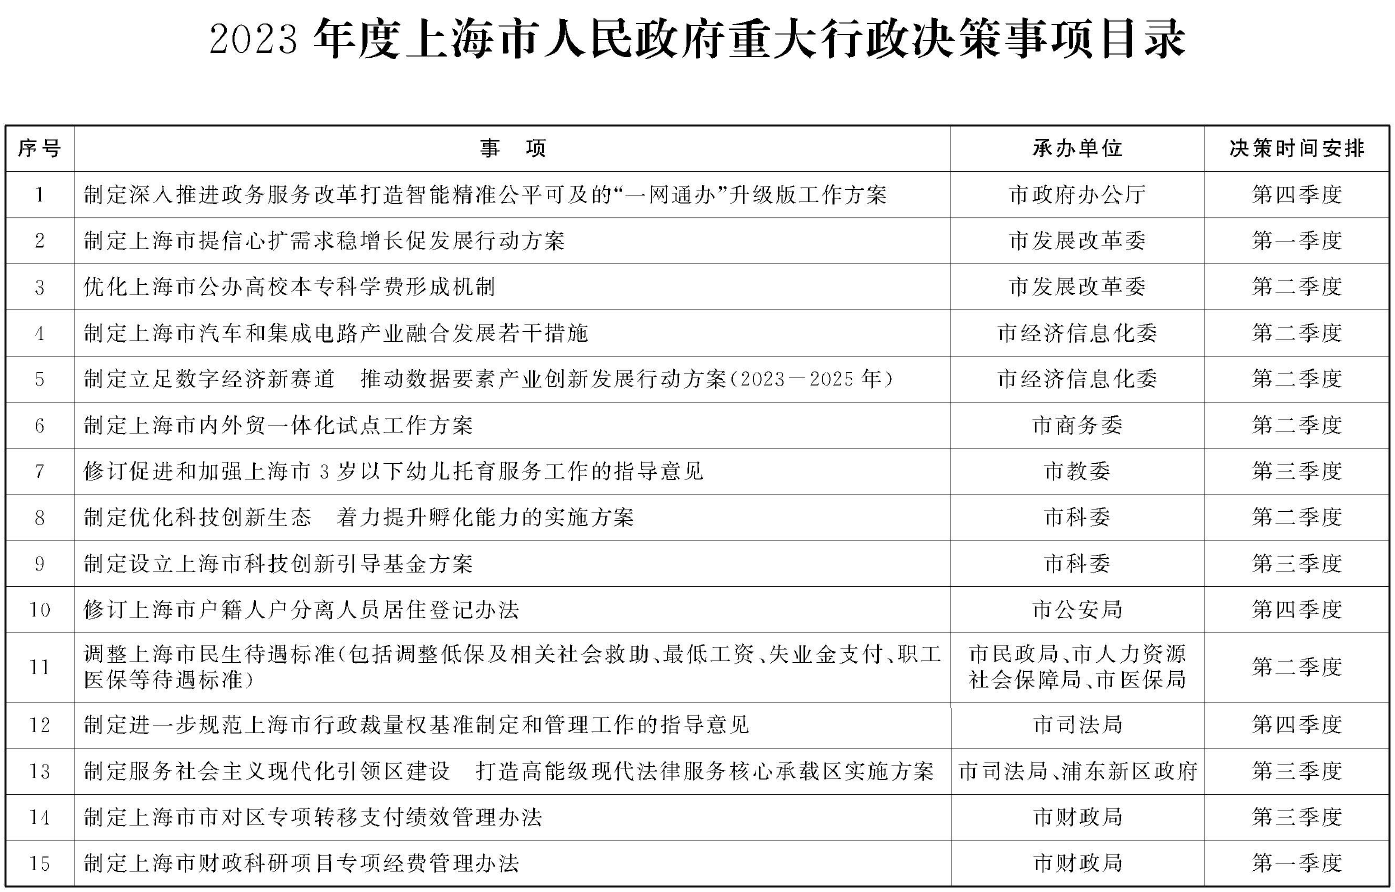 2023年度上海市人民政府重大行政決策事項目錄